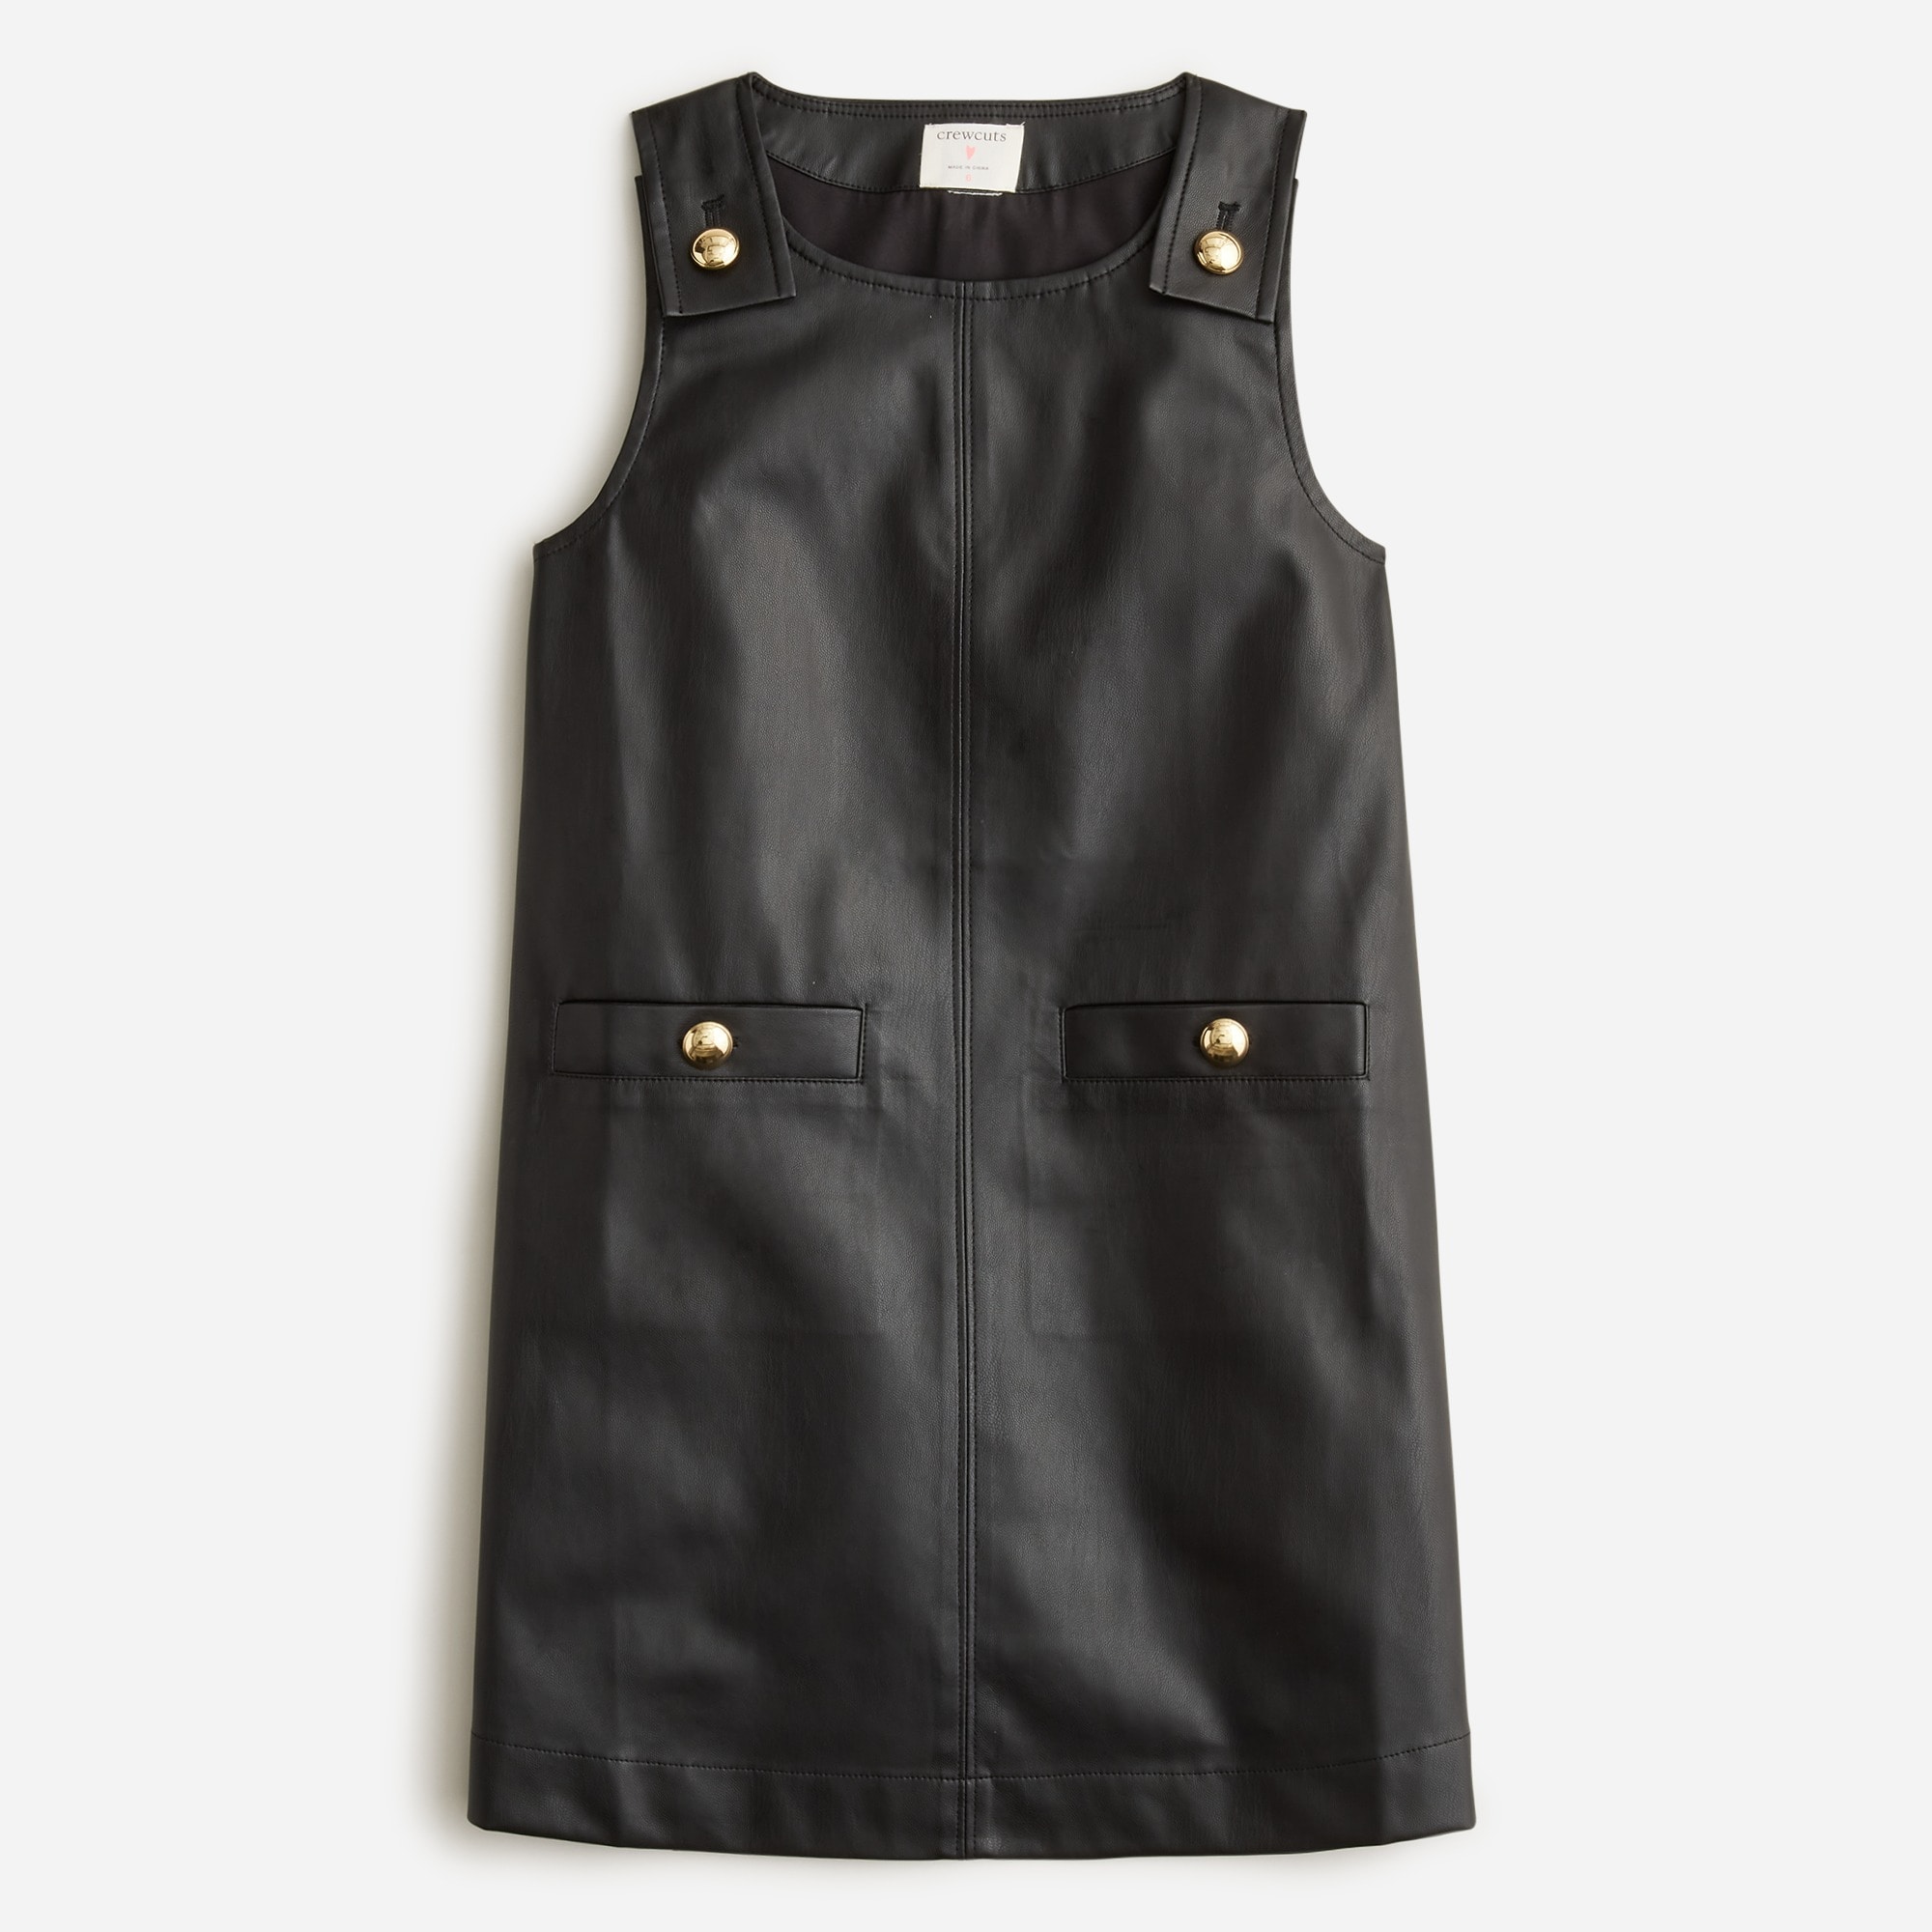 Jcrew Girls button-strap dress in faux leather